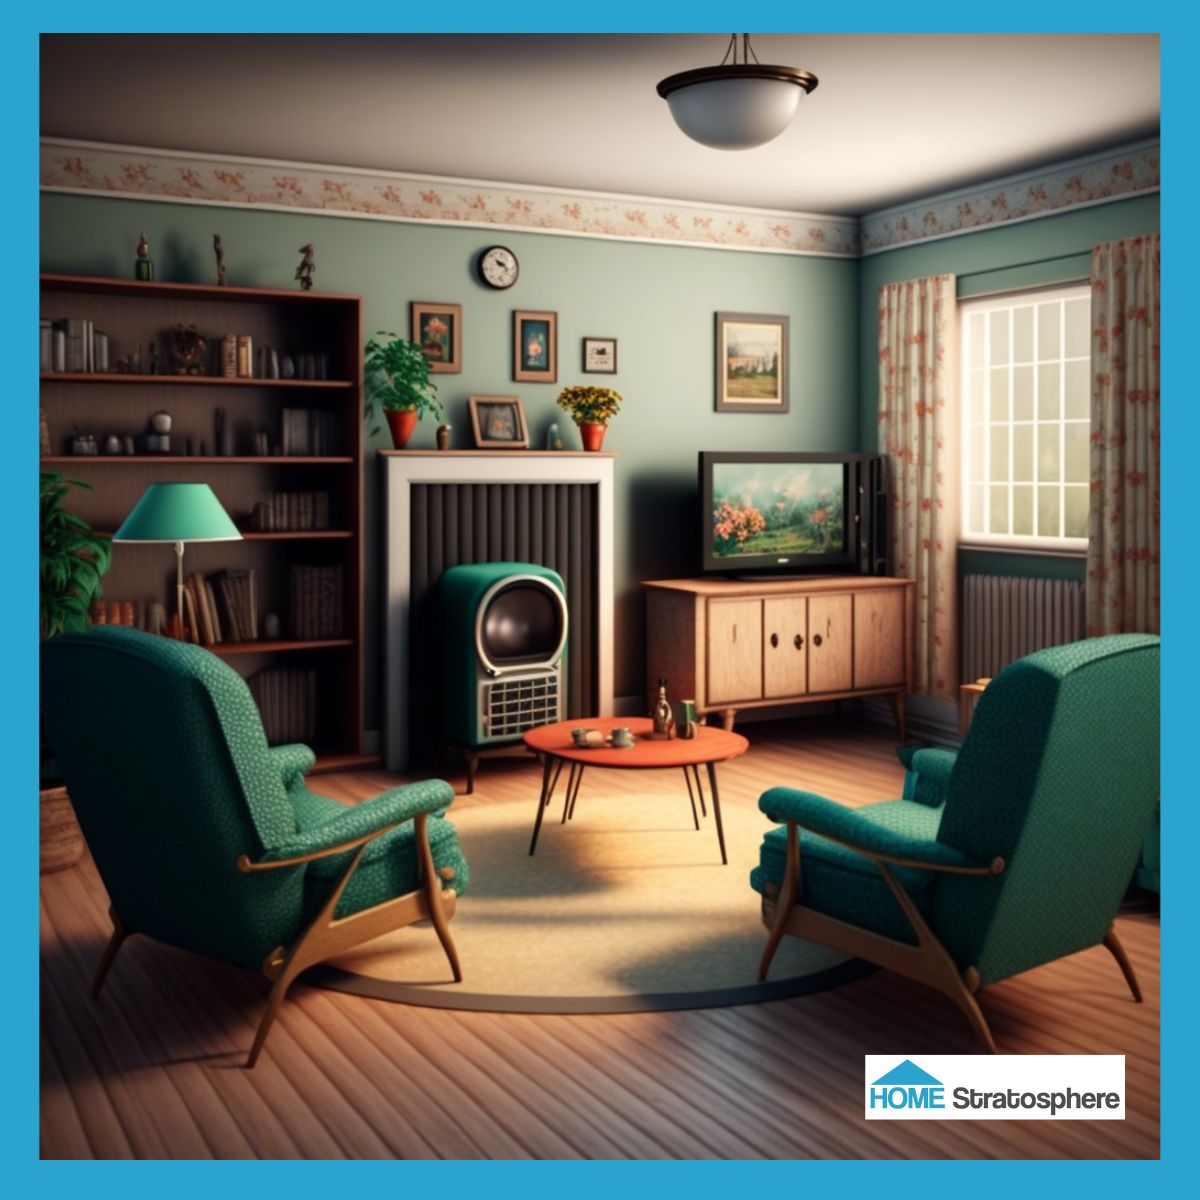 这个房间是过去和现在的完美结合。虽然中世纪的现代家具看起来直接来自20世纪50年代，但这个空间也有当代的细节，比如一台平板电视。花卉窗帘和边框是一个近乎完美的搭配，是明亮的蓝绿色墙壁的美丽补充。它看起来是一个看电影或和老朋友叙旧的好地方。